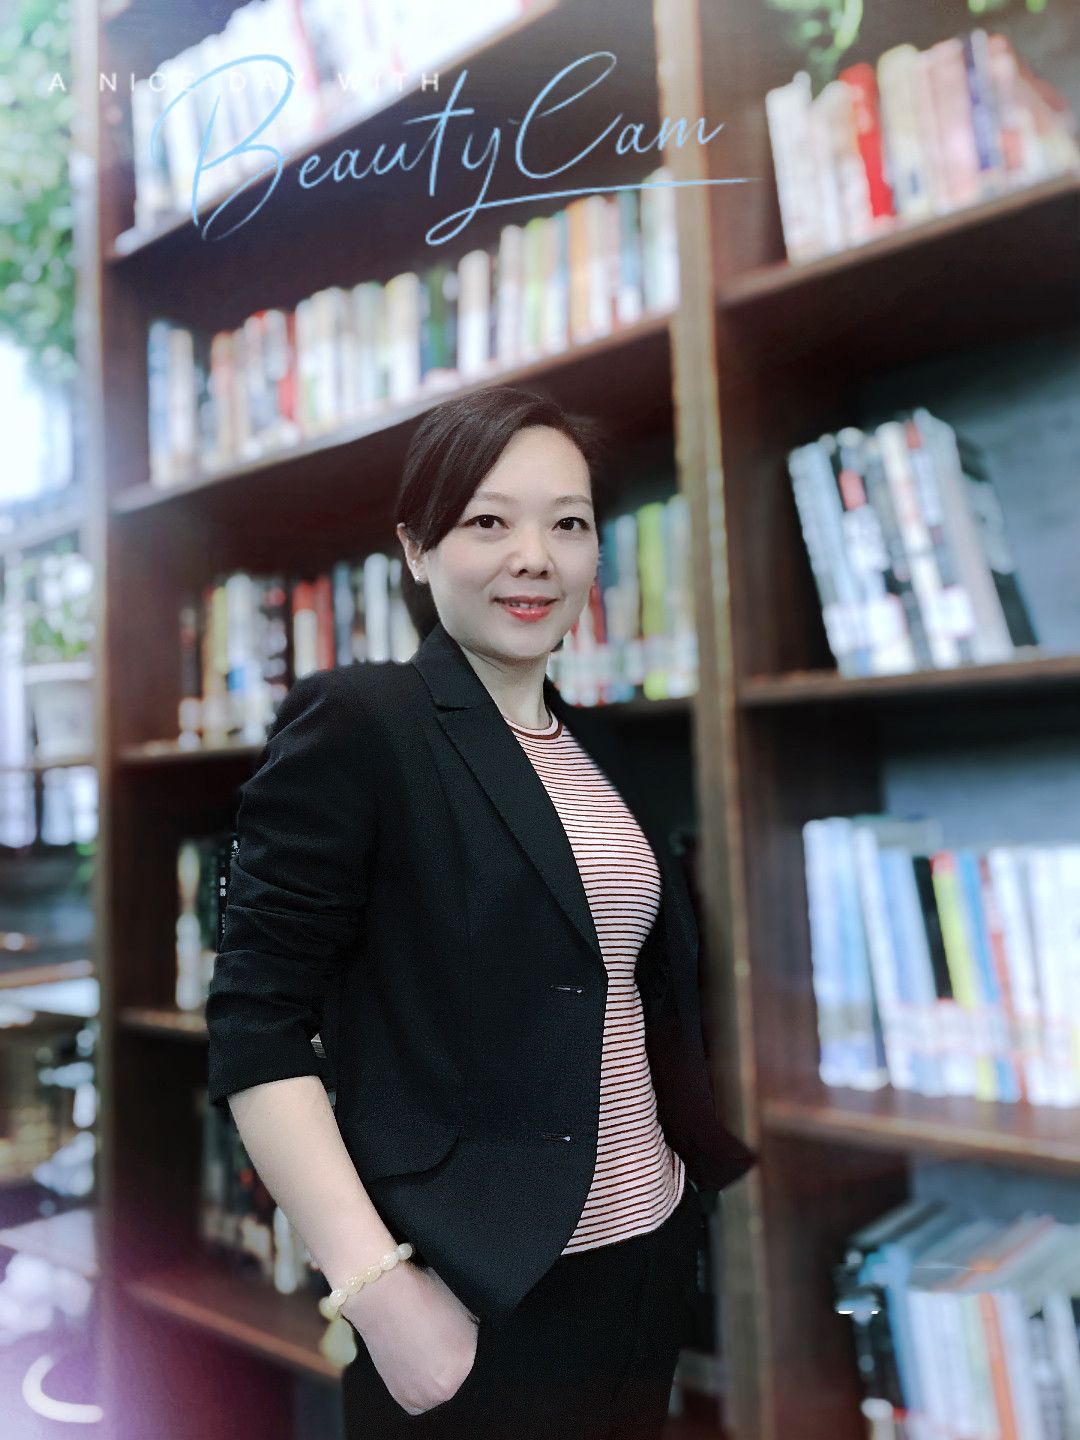 朱巧莉(朱珠),荆门广播电视台节目主持人,从事播音主持工作20年